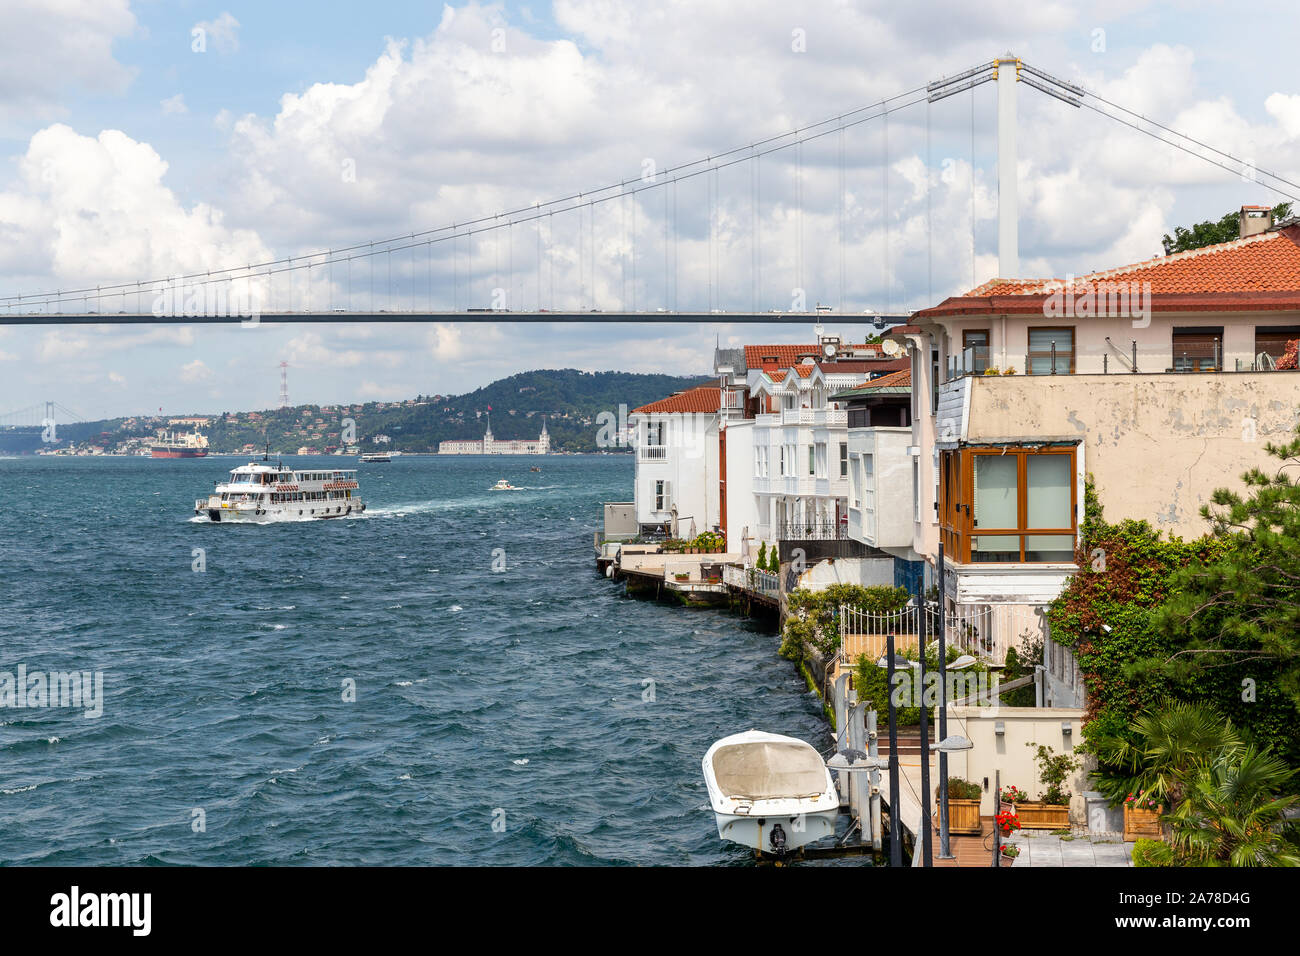 Blick auf die Villen in der Bosporus Kuzguncuk. Kuzguncuk ist ein Stadtteil im Uskudar Stadtteil auf der asiatischen Seite des Bosporus in Istanbul Stockfoto